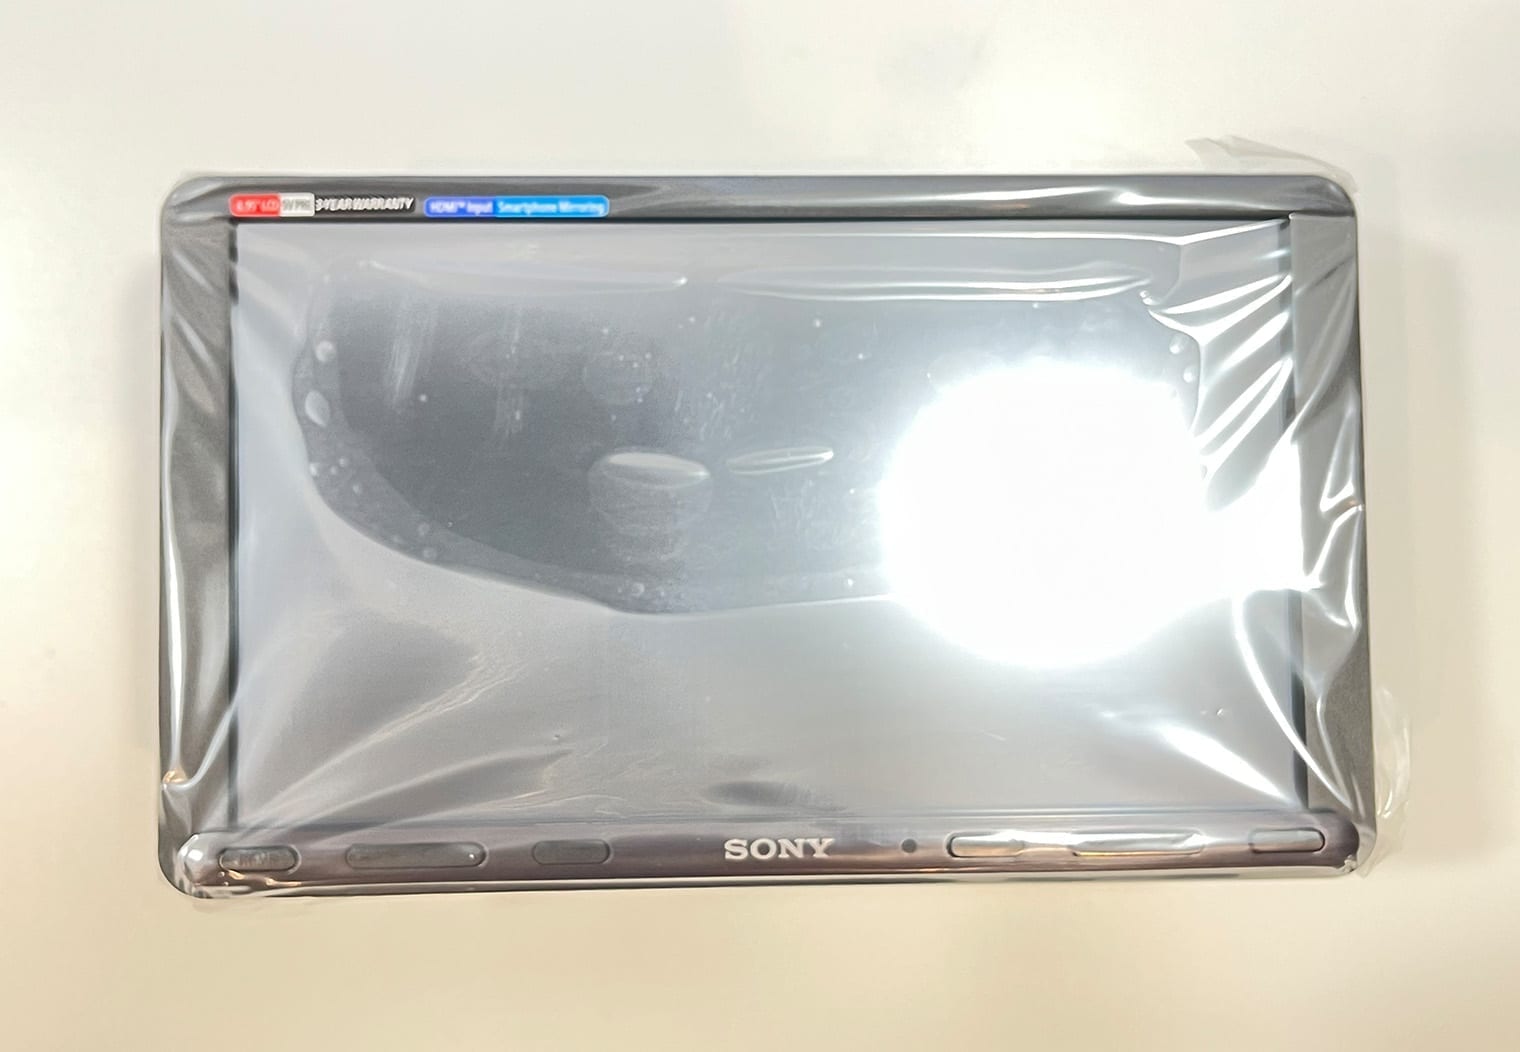 Sony XAV-AX8100 screen front view